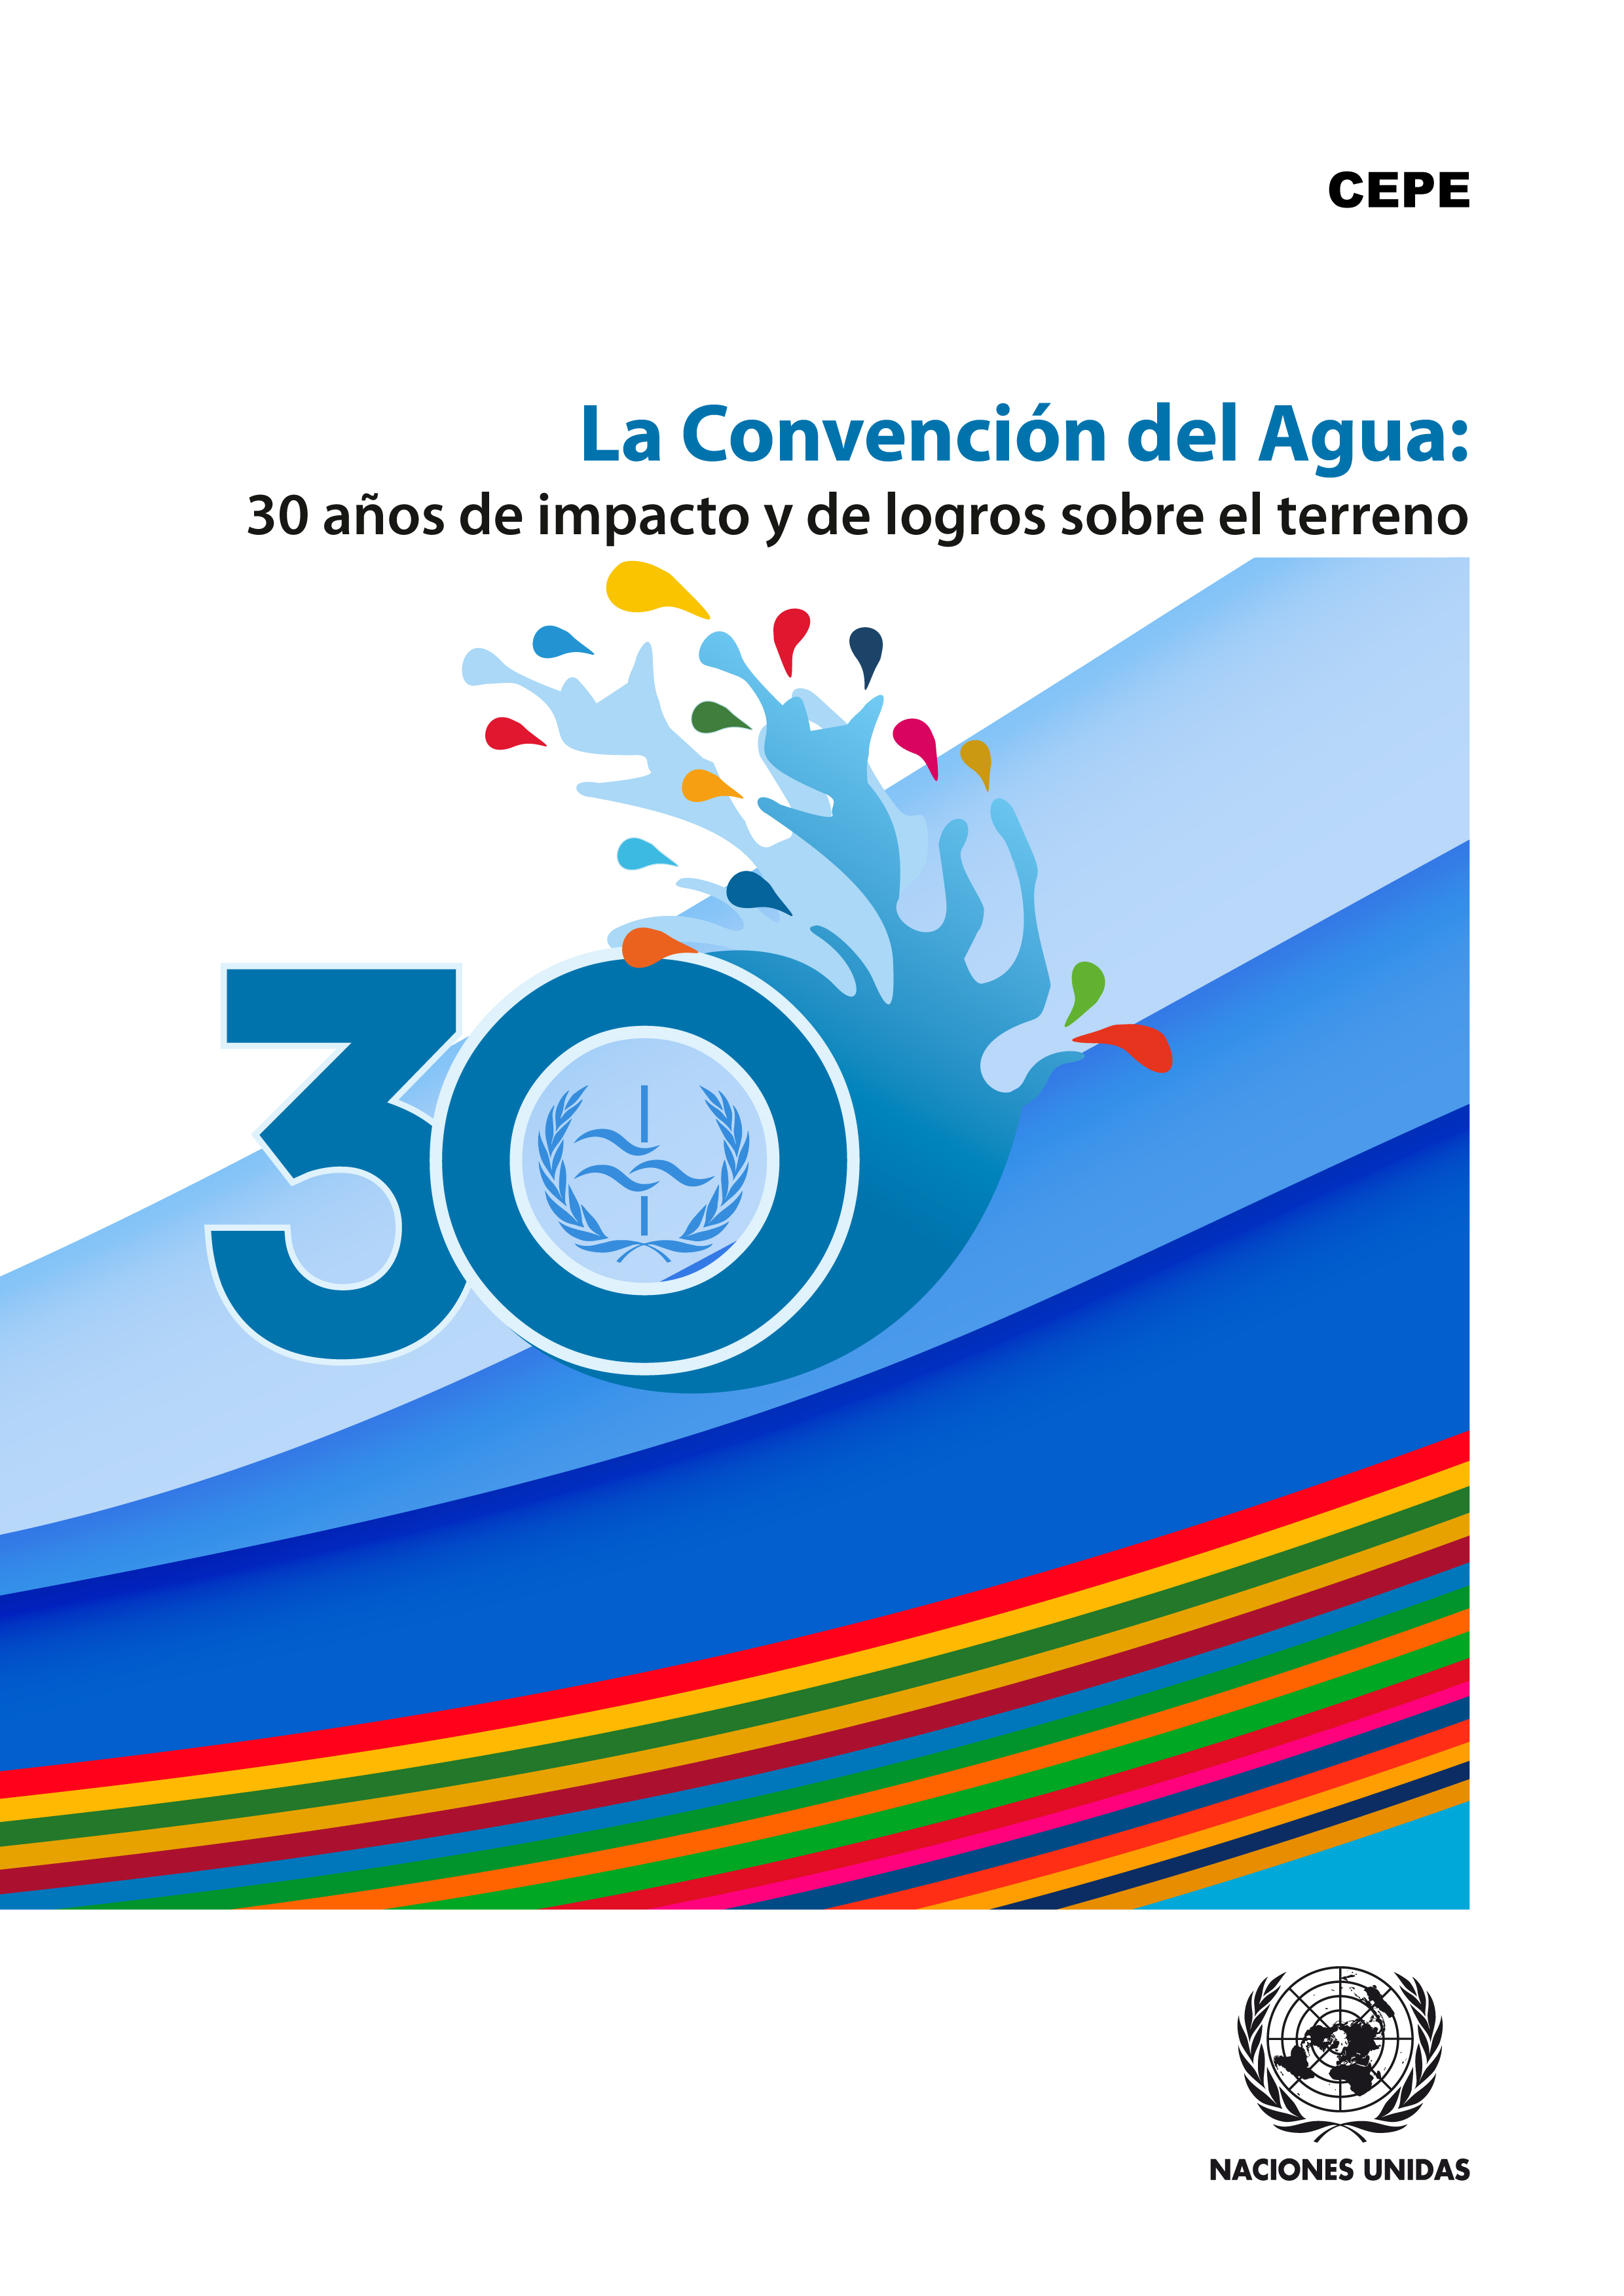 image of La Convención del Agua ayuda a los países a adaptarse al cambio climático y a disminuir el riesgo de catástrofes